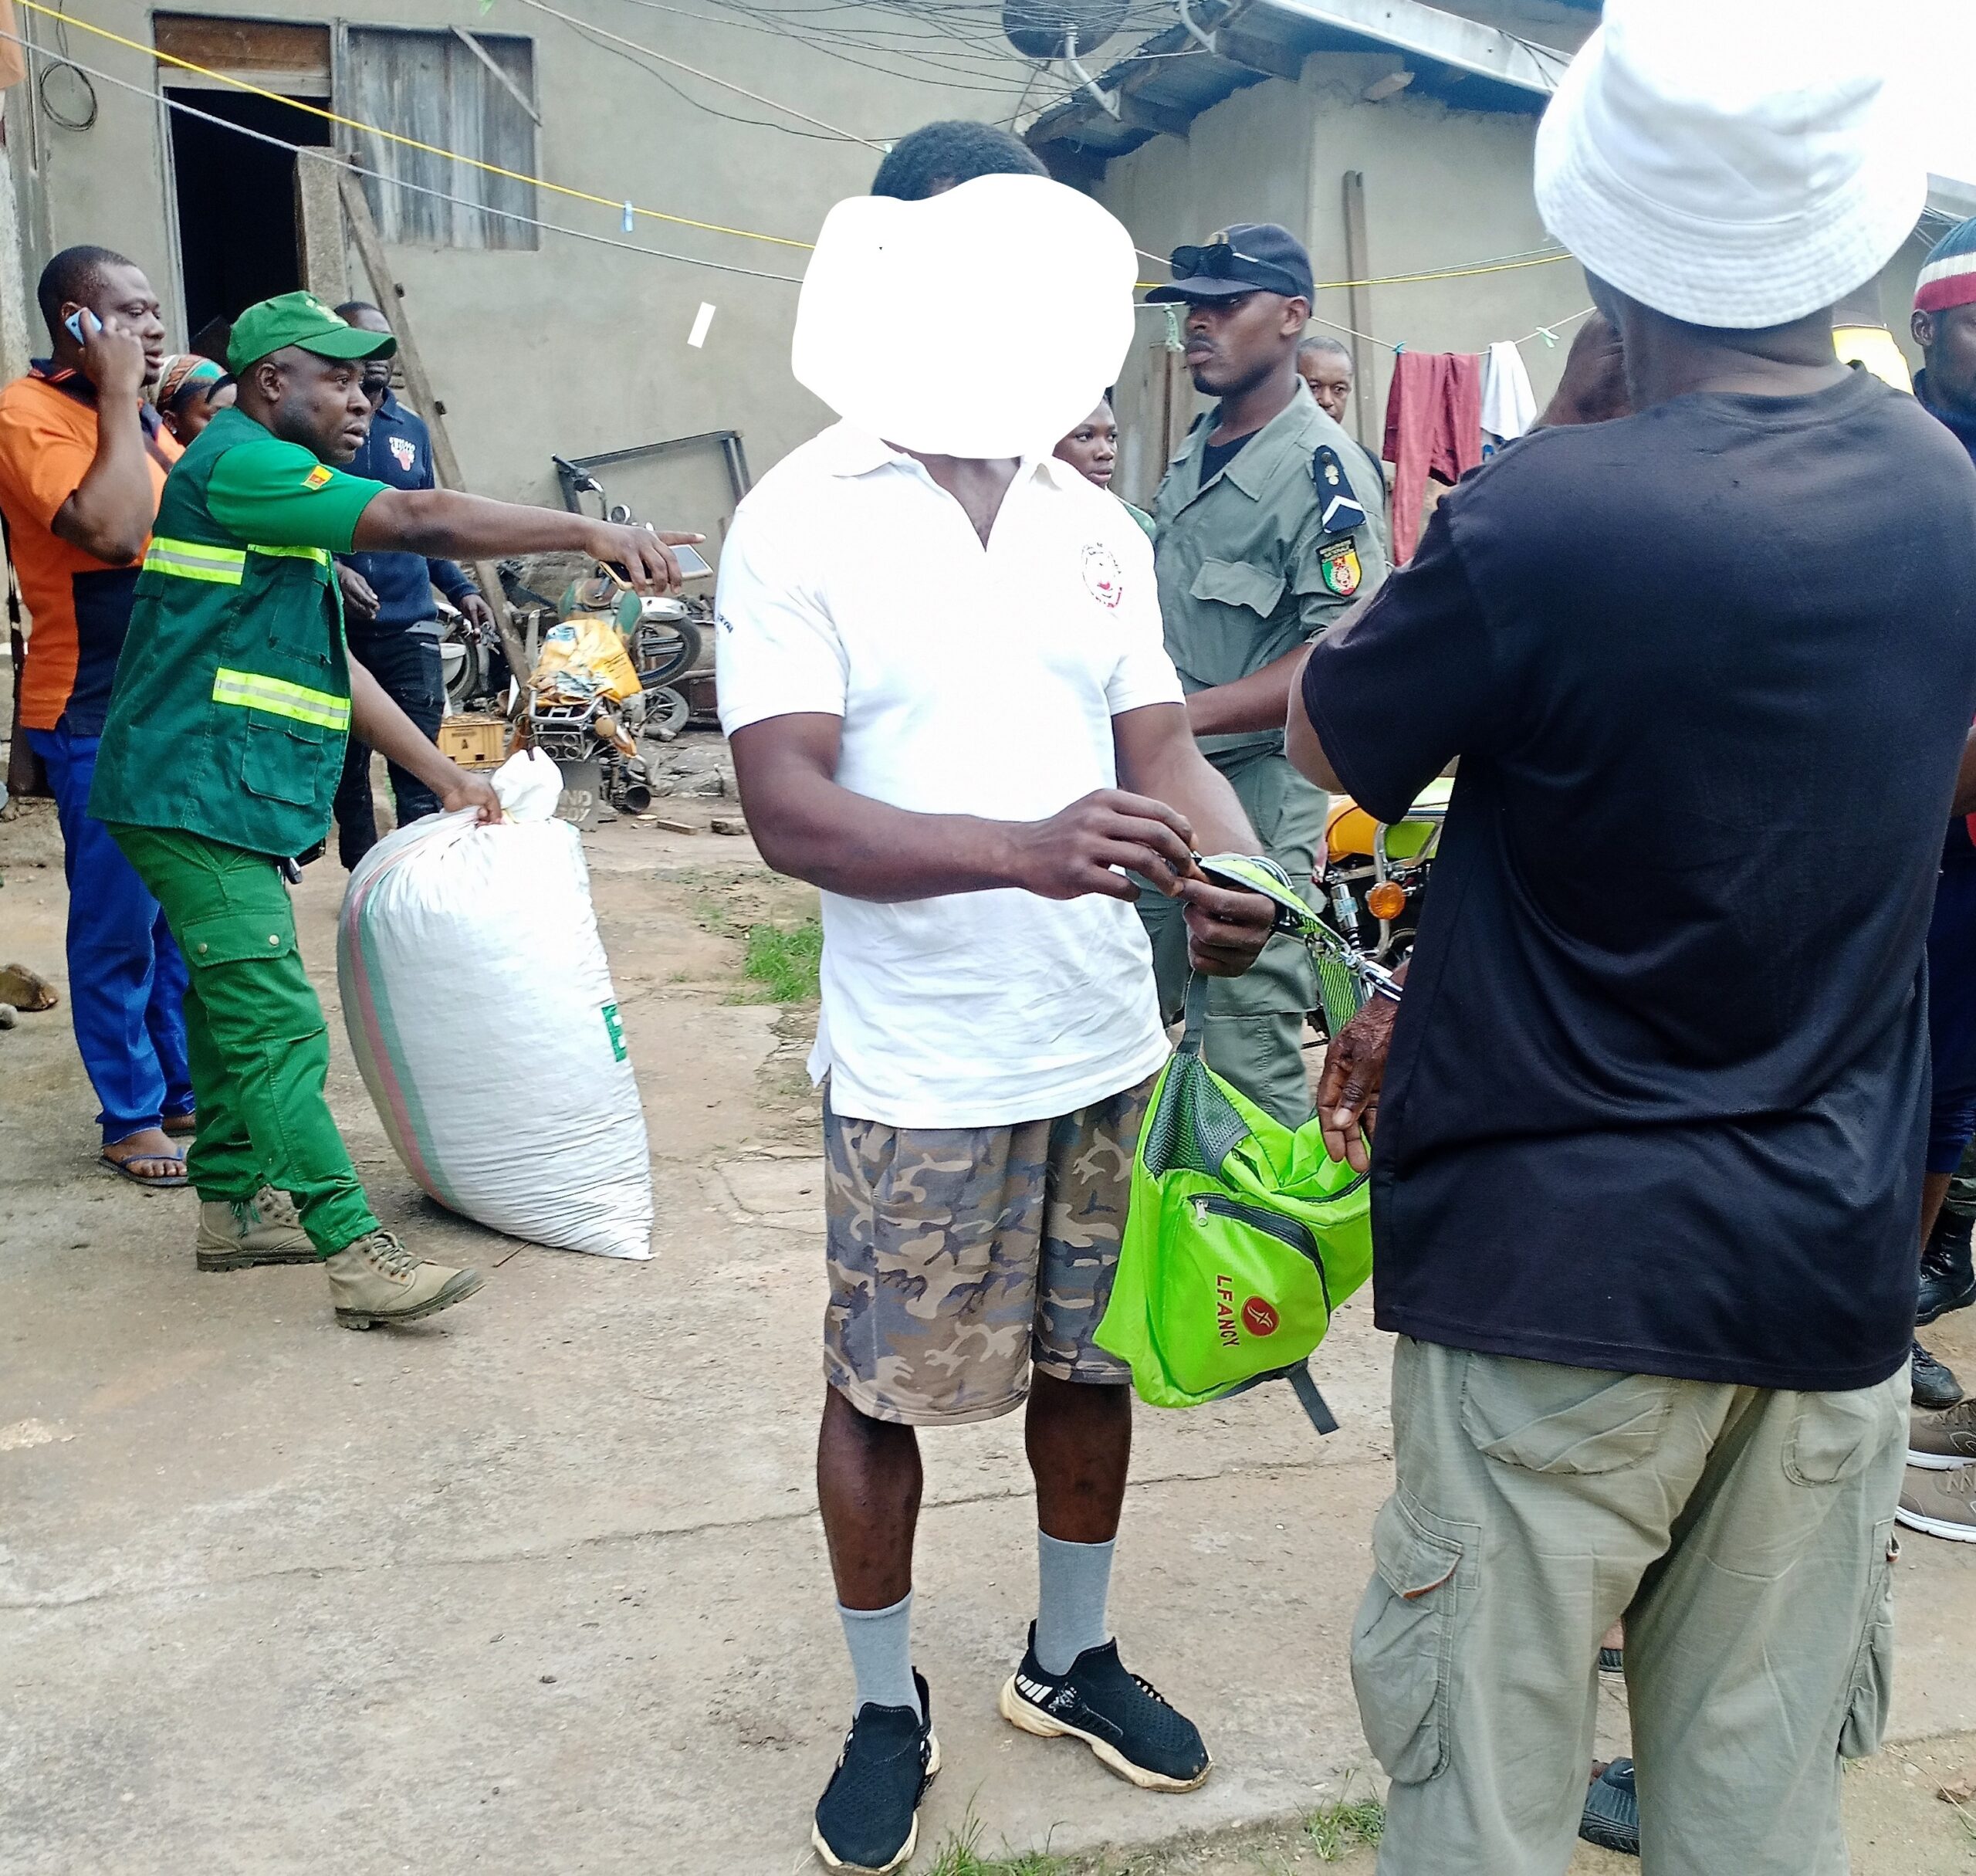 Des trafiquants d'écailles de pangolins arrêtés à Makénéné au Cameroun. Photo Alwihda